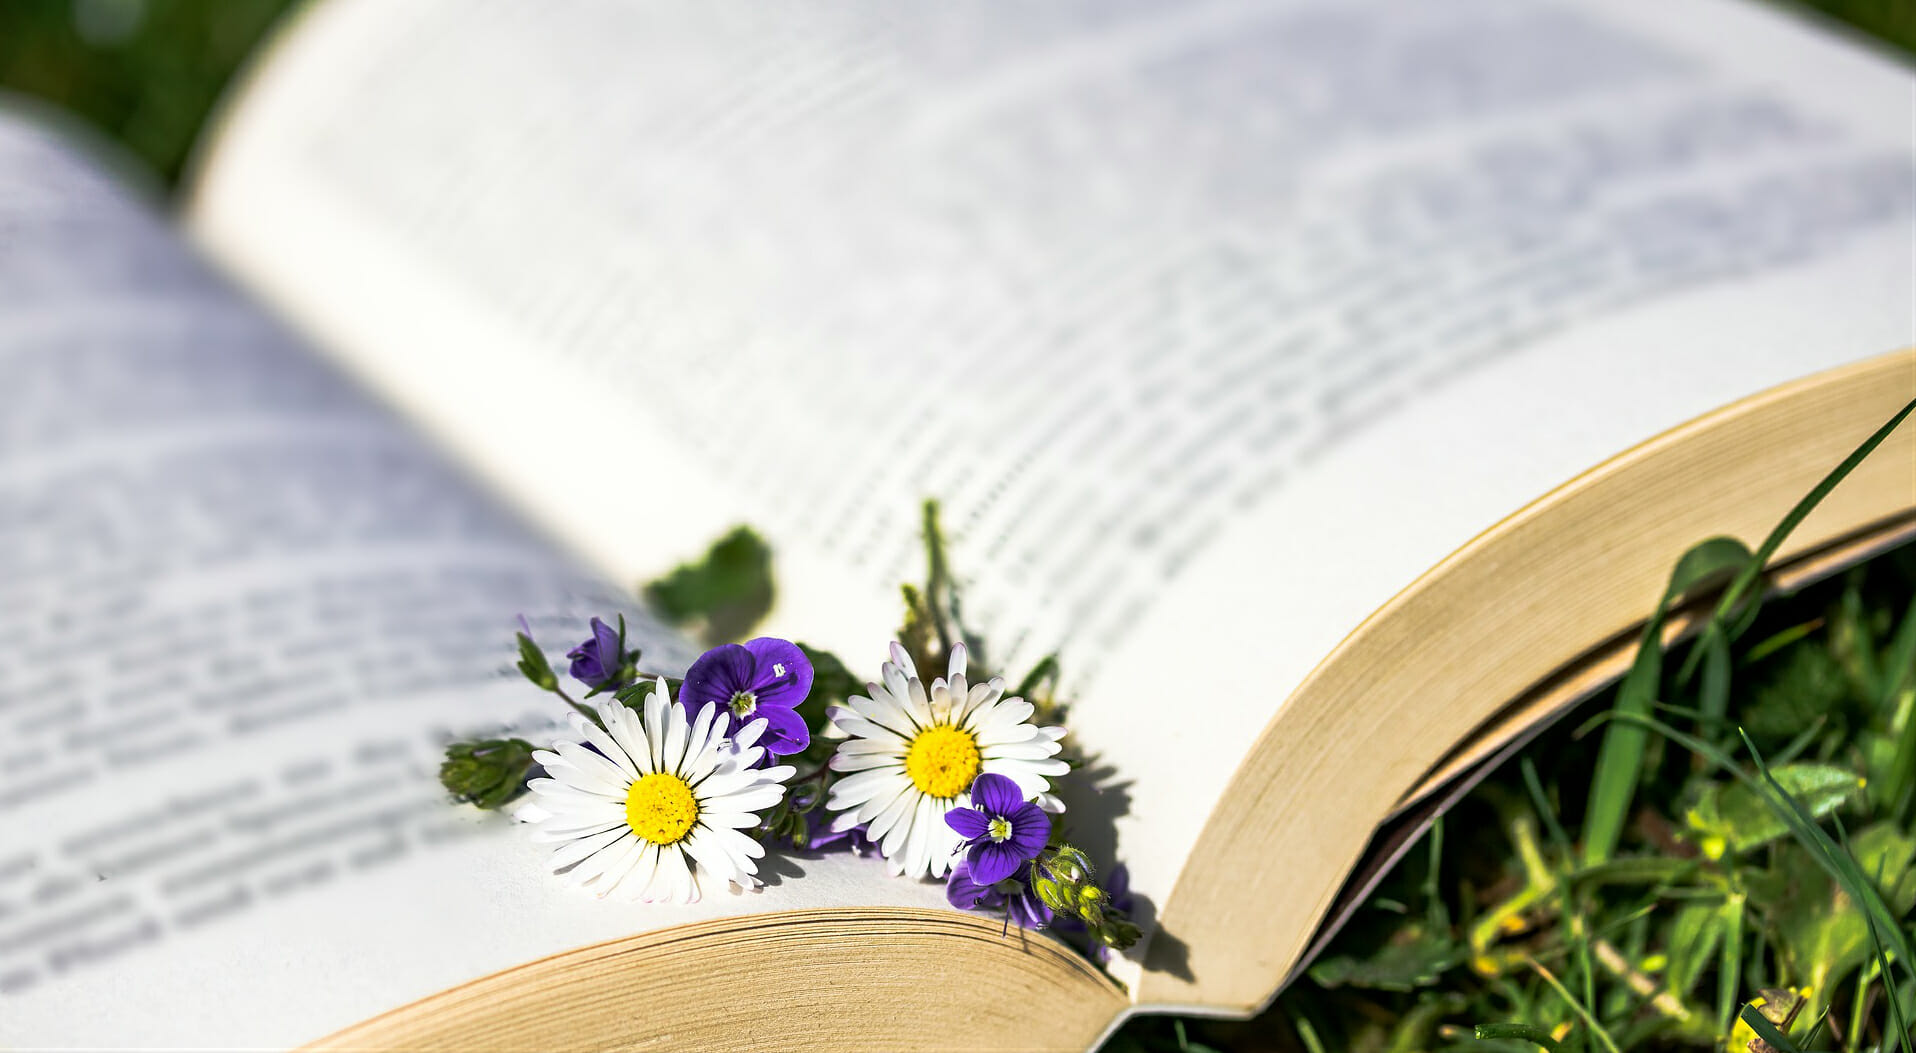 libro libri book books segnalibro fiori margherita margherite fiore prato lettore lettura leggere